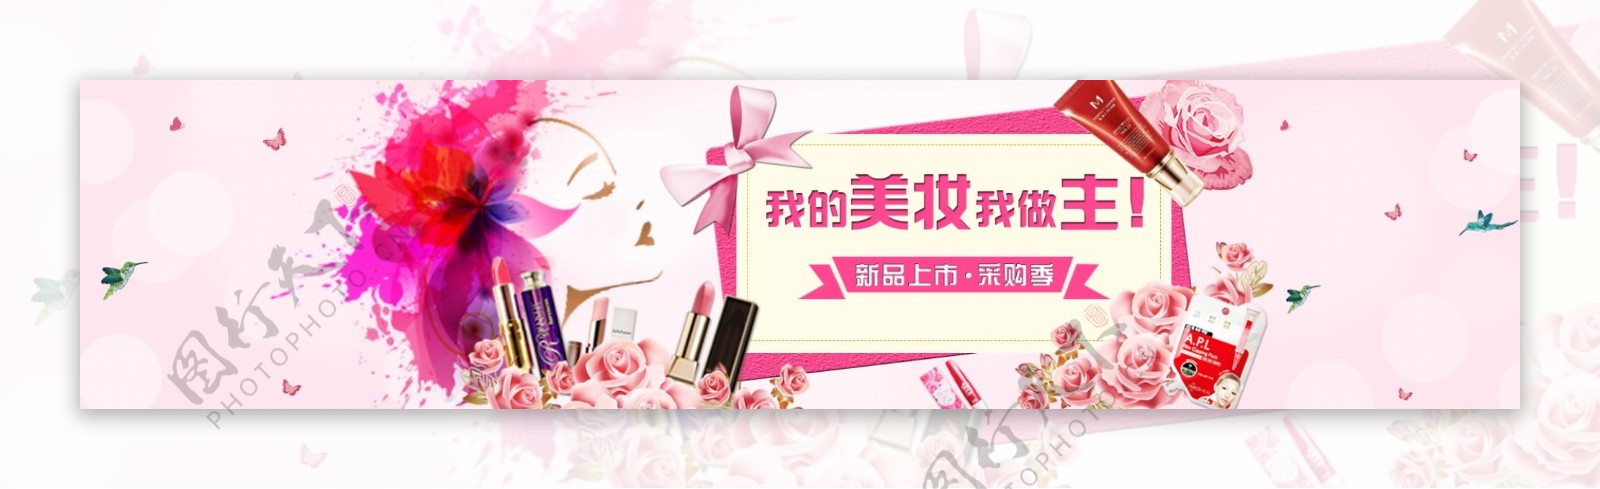 网站Banner02彩妆